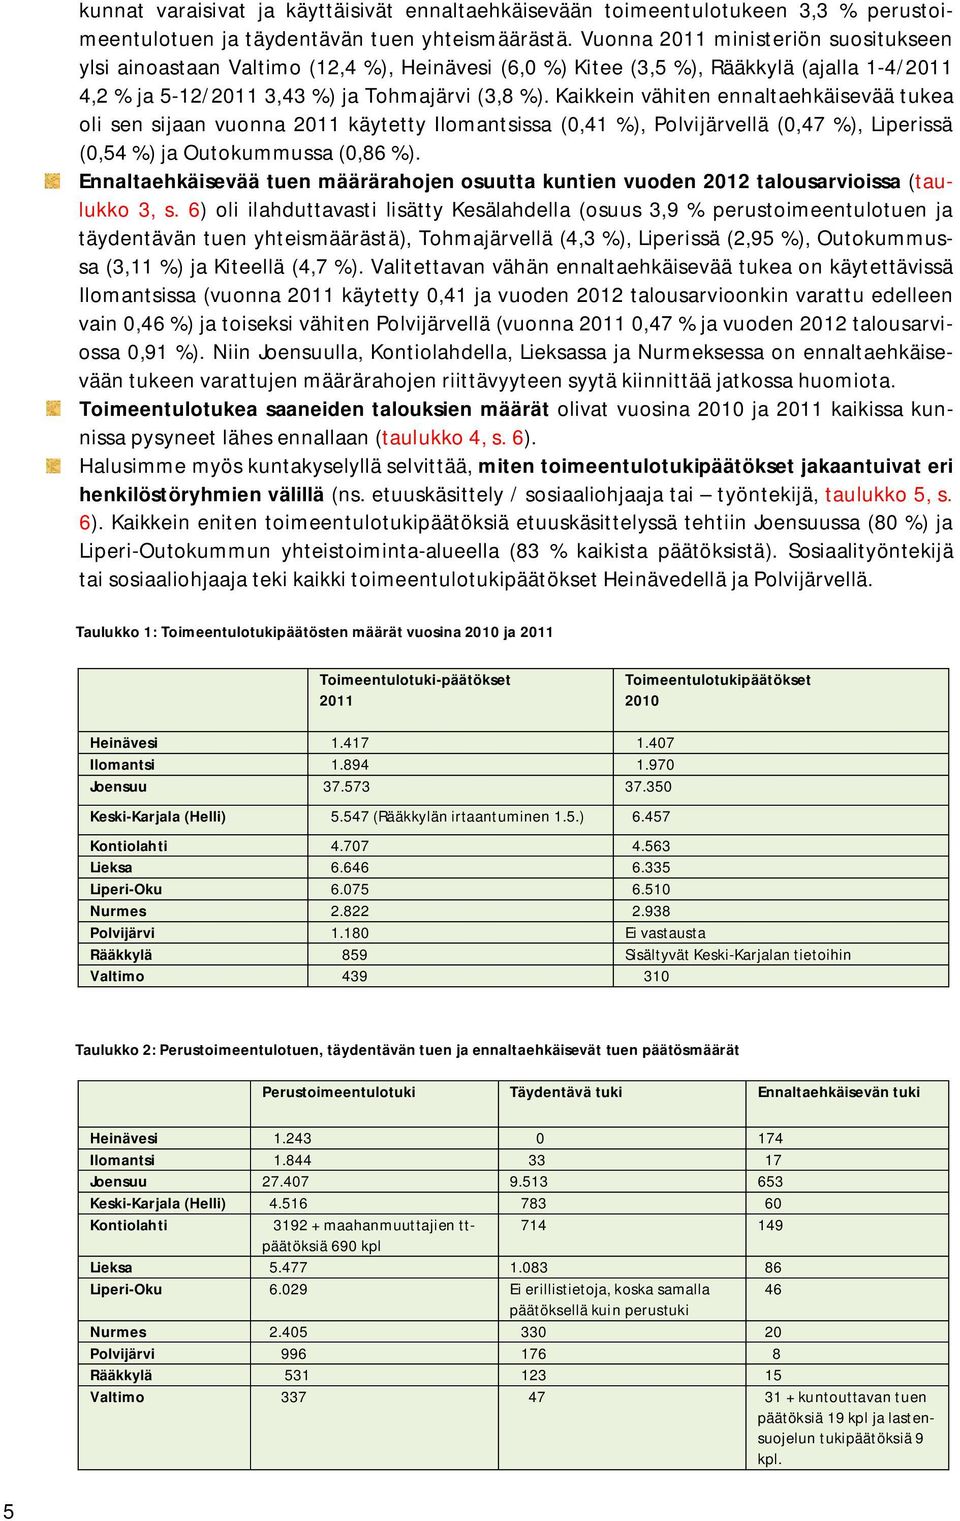 Kaikkein vähiten ennaltaehkäisevää tukea oli sen sijaan vuonna 2011 käytetty Ilomantsissa (0,41 %), Polvijärvellä (0,47 %), Liperissä (0,54 %) ja Outokummussa (0,86 %).